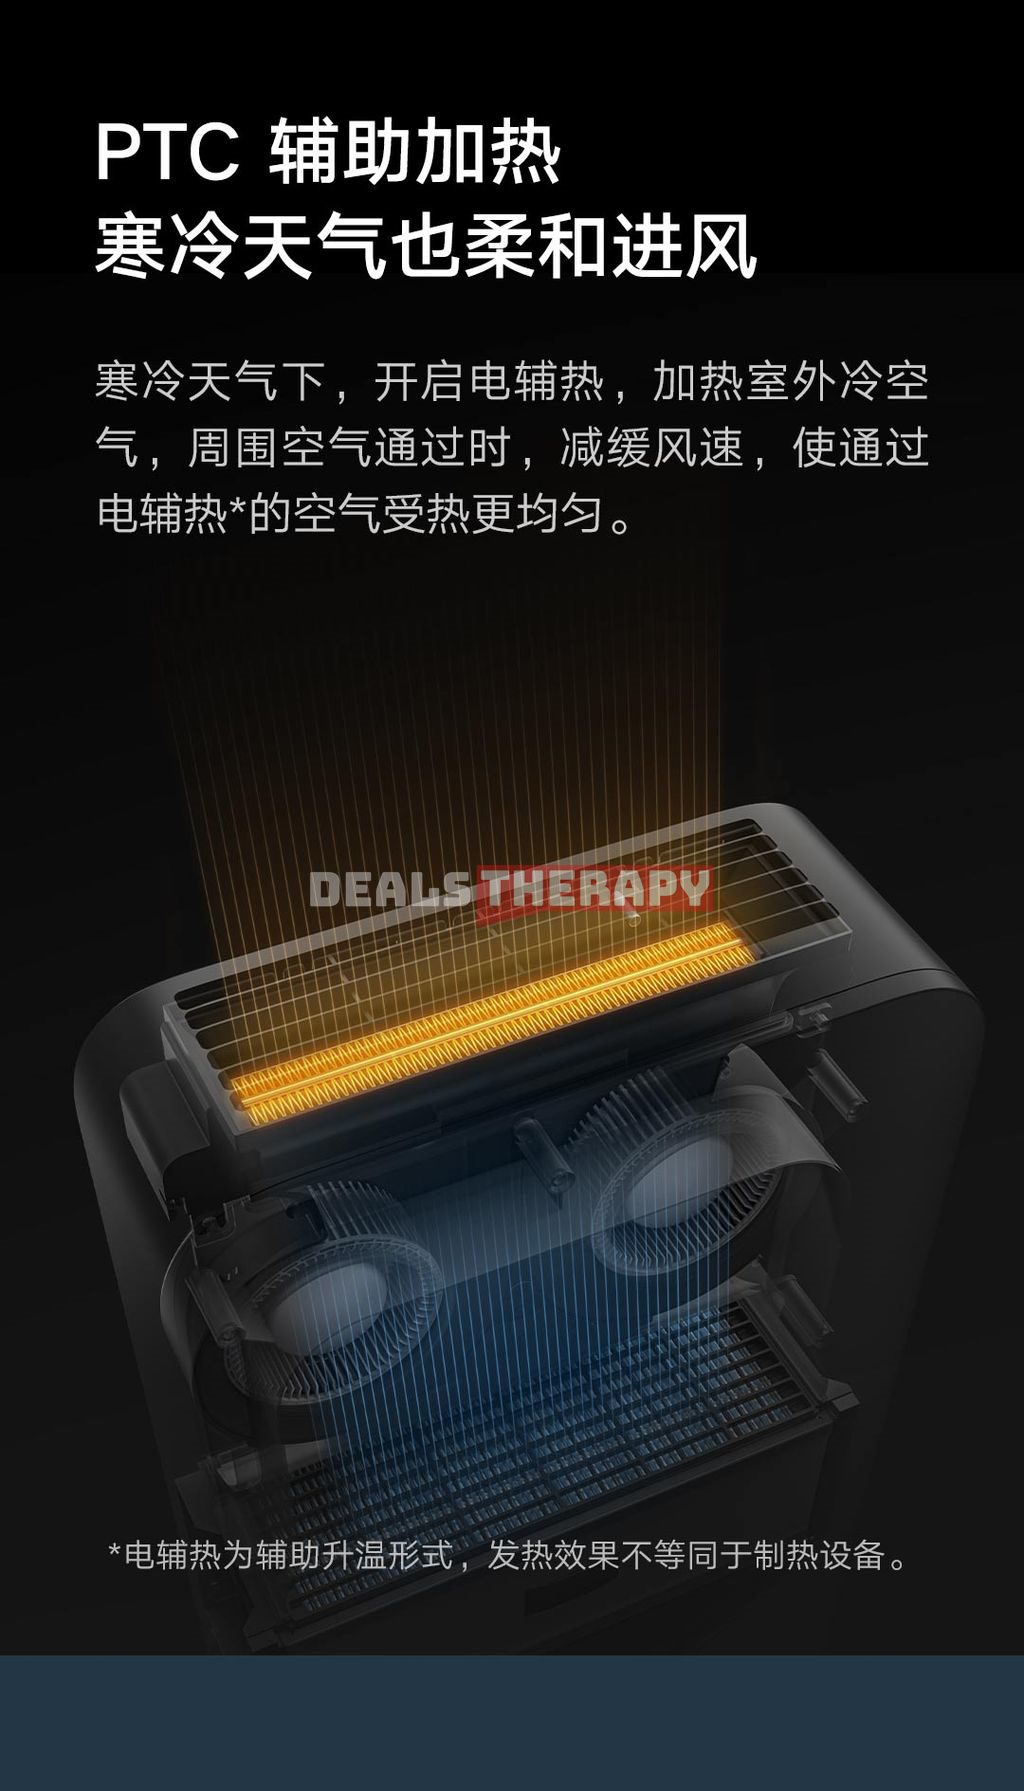 Xiaomi Mijia New Fan C1